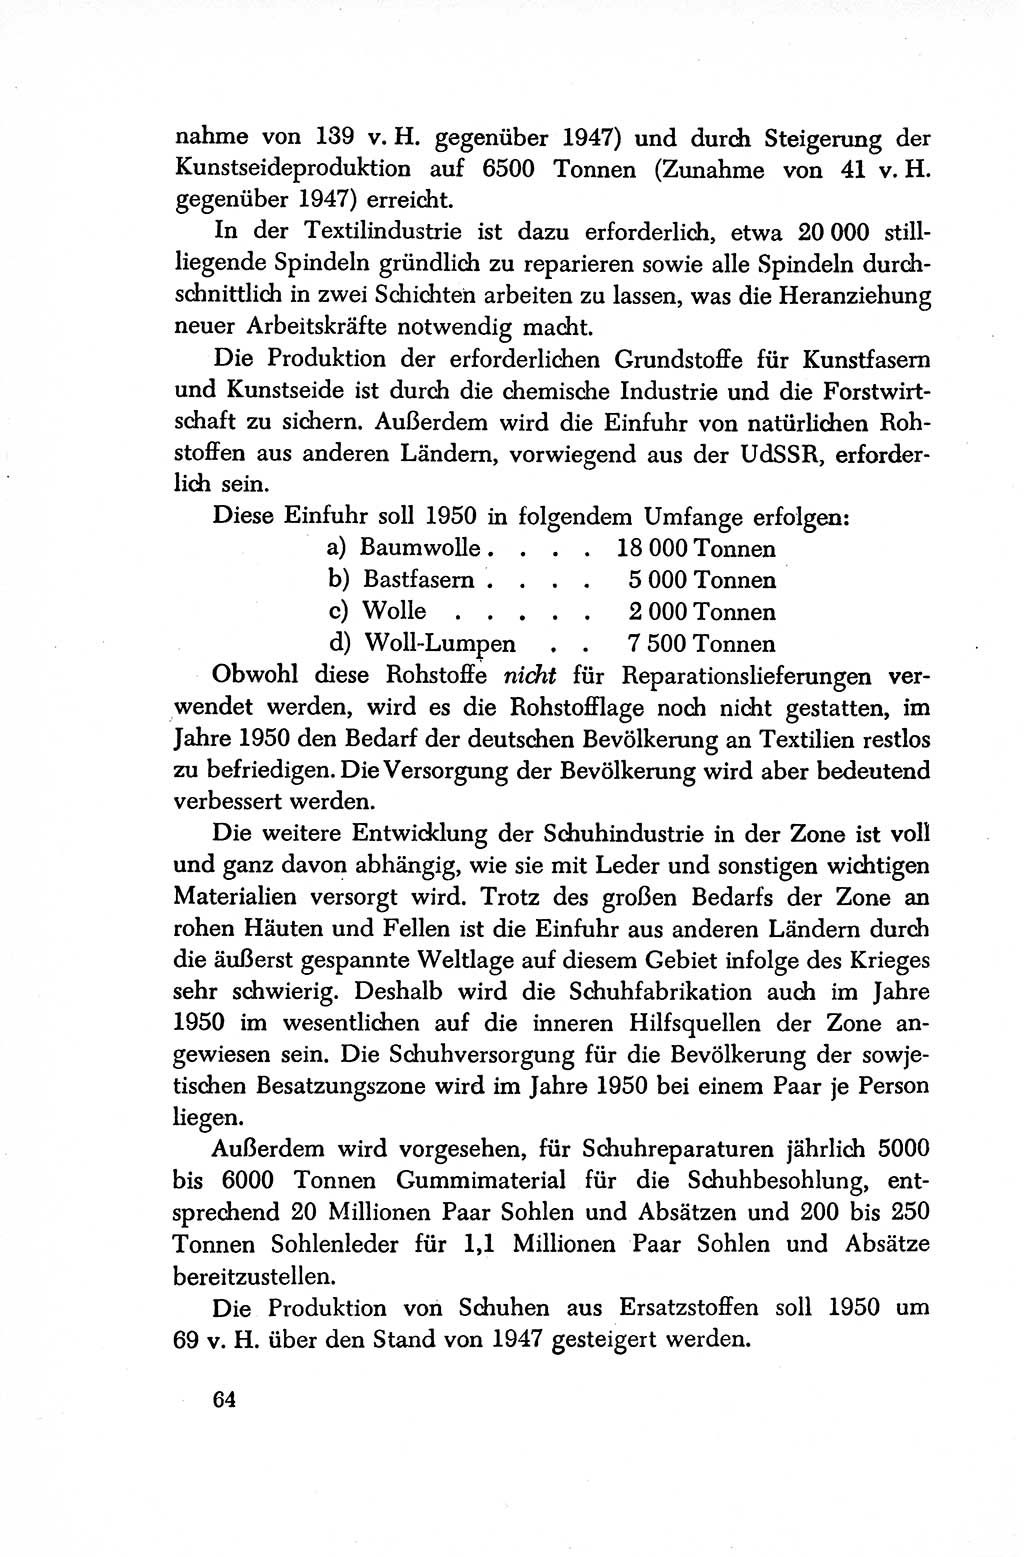 Dokumente der Sozialistischen Einheitspartei Deutschlands (SED) [Sowjetische Besatzungszone (SBZ) Deutschlands/Deutsche Demokratische Republik (DDR)] 1948-1950, Seite 64 (Dok. SED SBZ Dtl. DDR 1948-1950, S. 64)